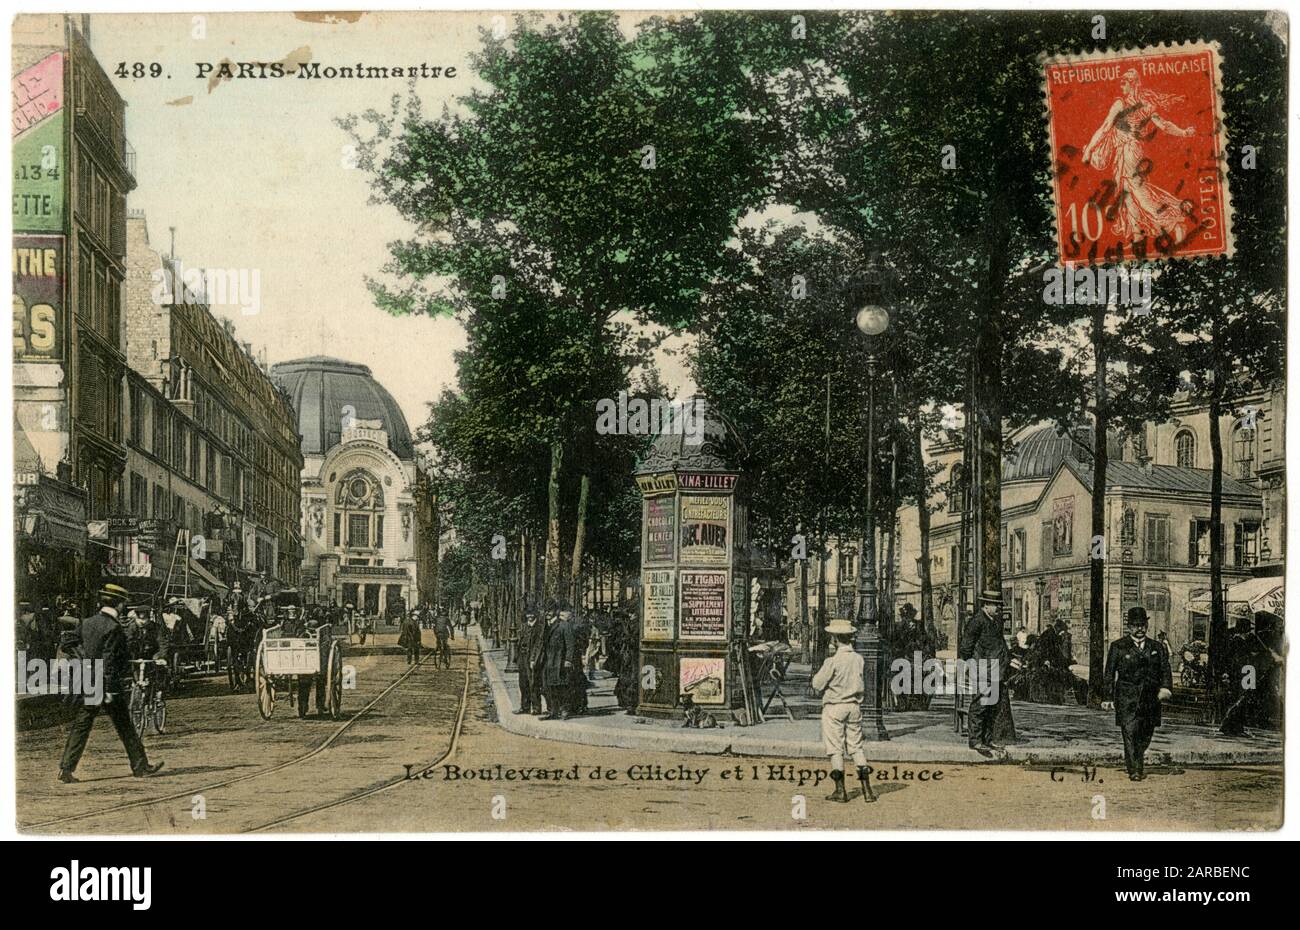 Boulevard de Clichy und Hippodrome Palace, Montmartre, 18. Arrondissement, Paris, Frankreich. Stockfoto